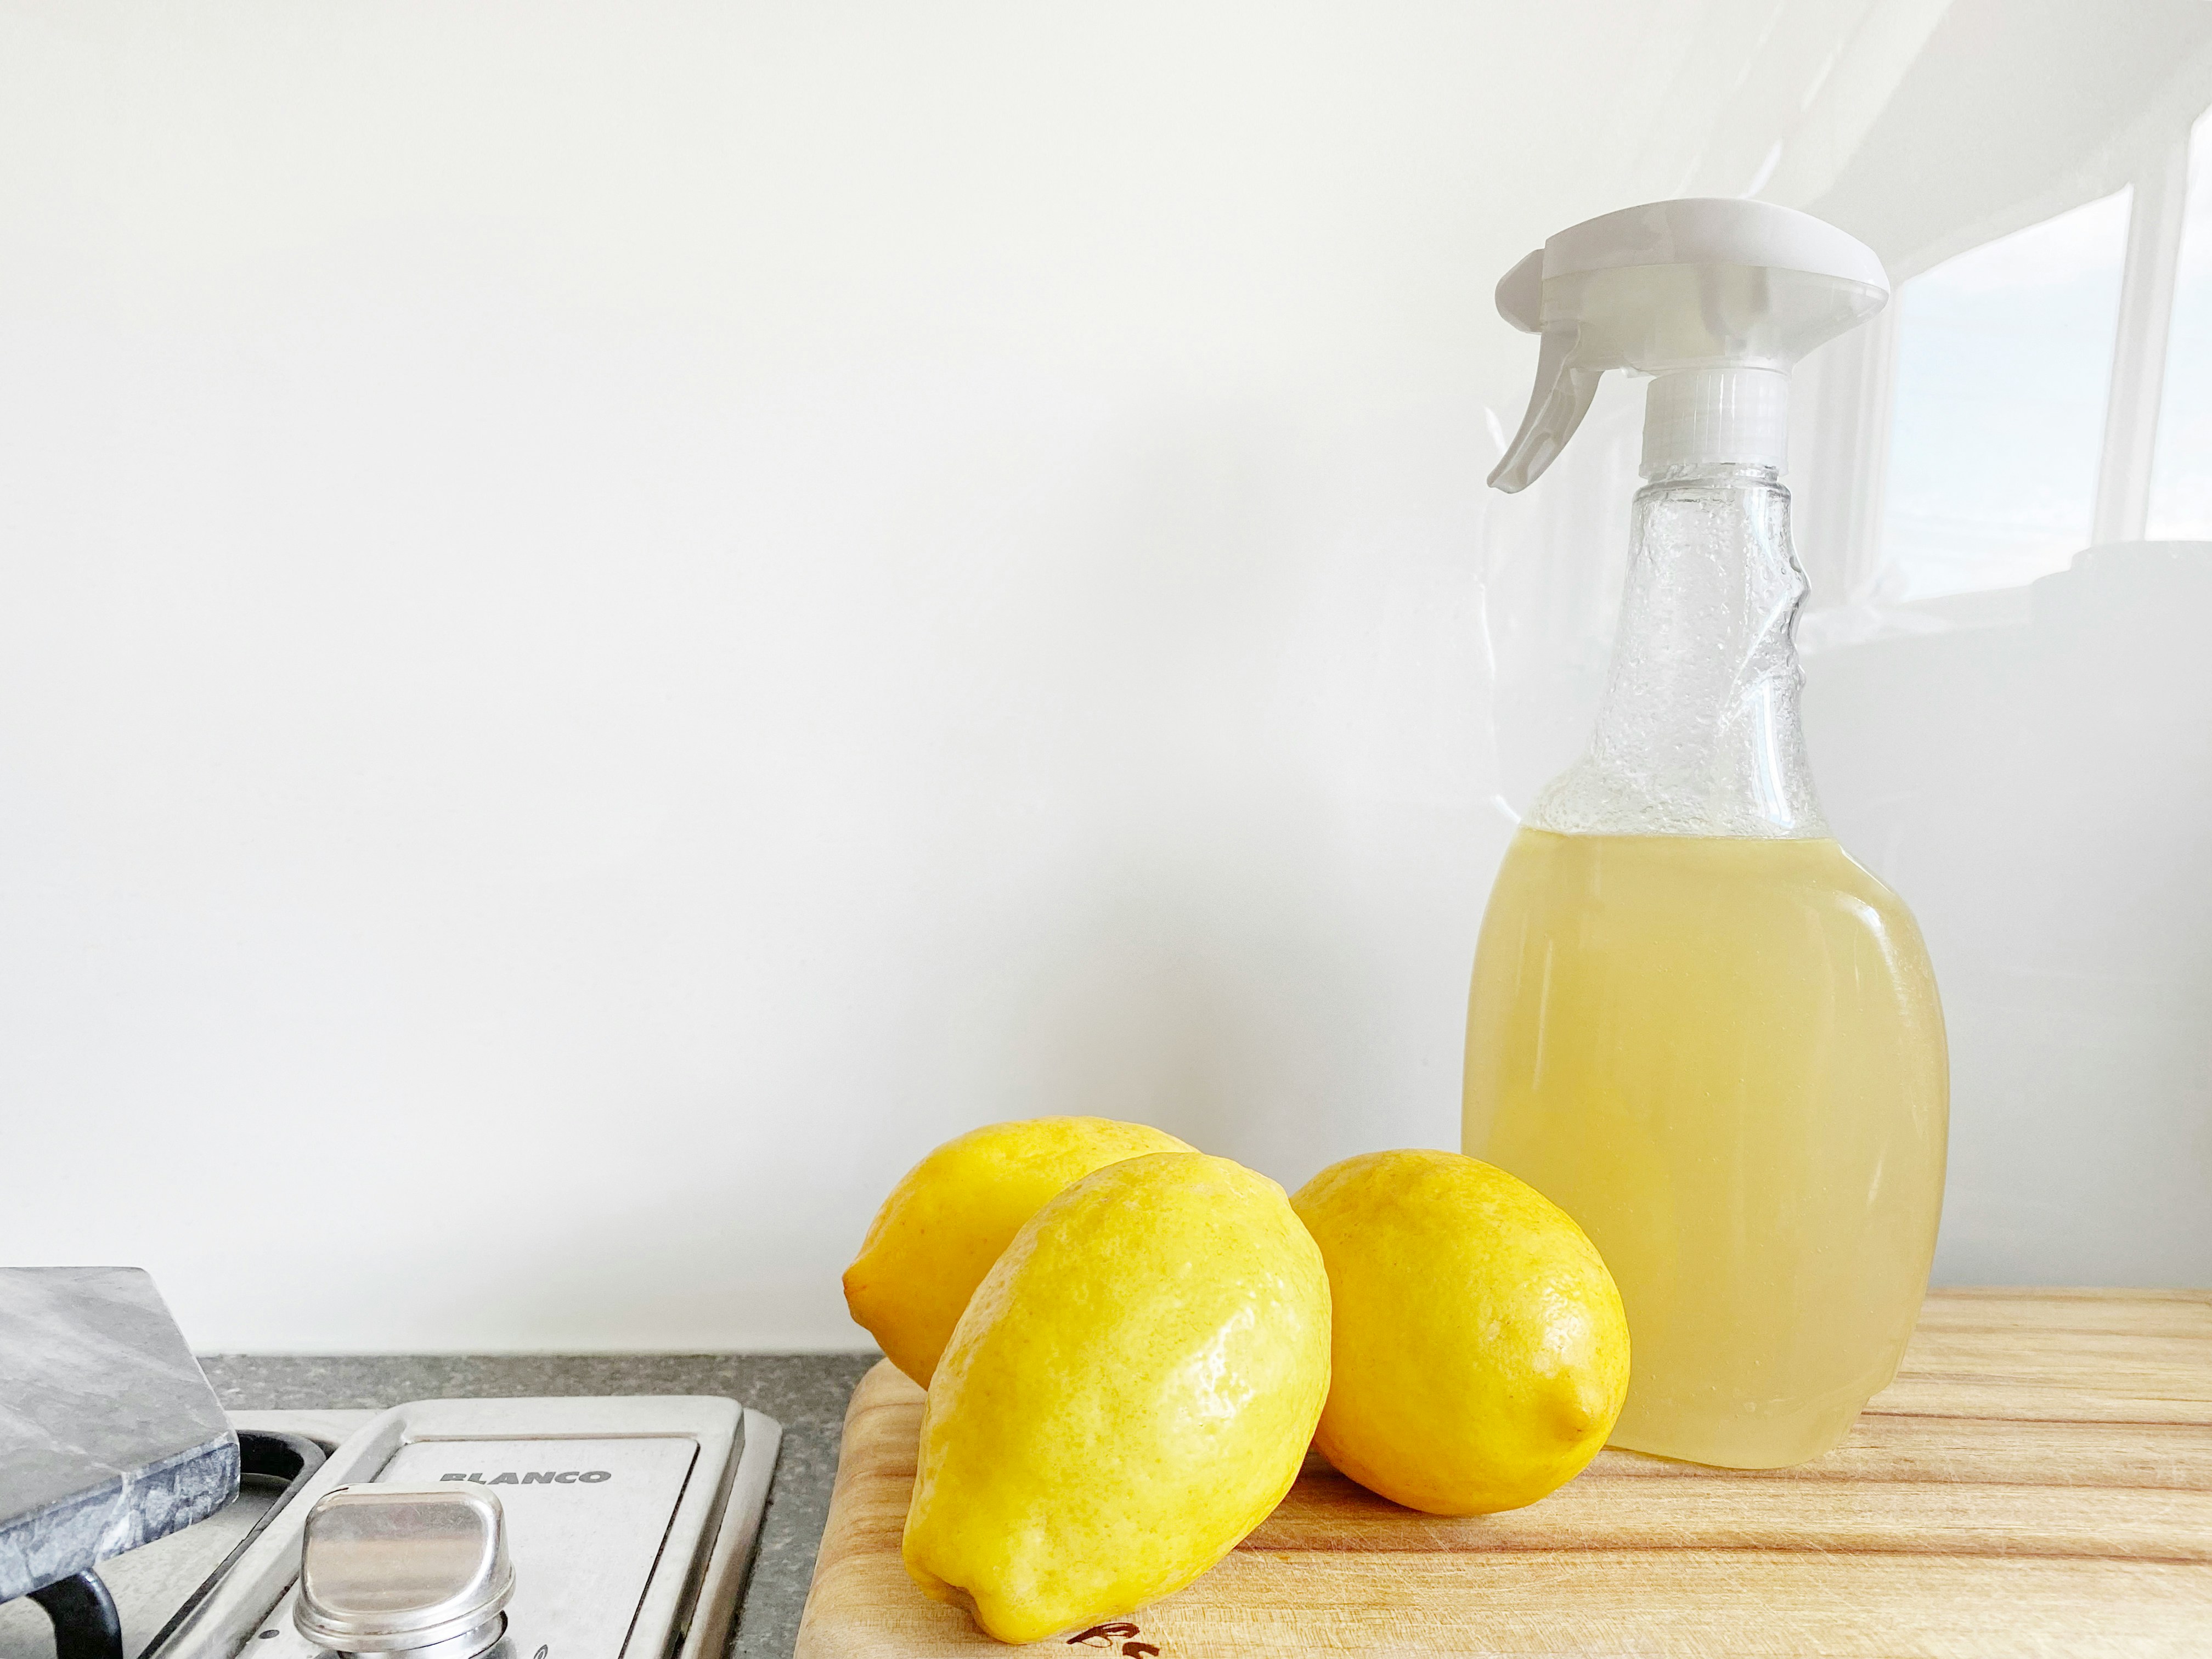 Photo by Precious Plastic Melbourne on Unsplash
lemon
cleaning bottle
kitchen
